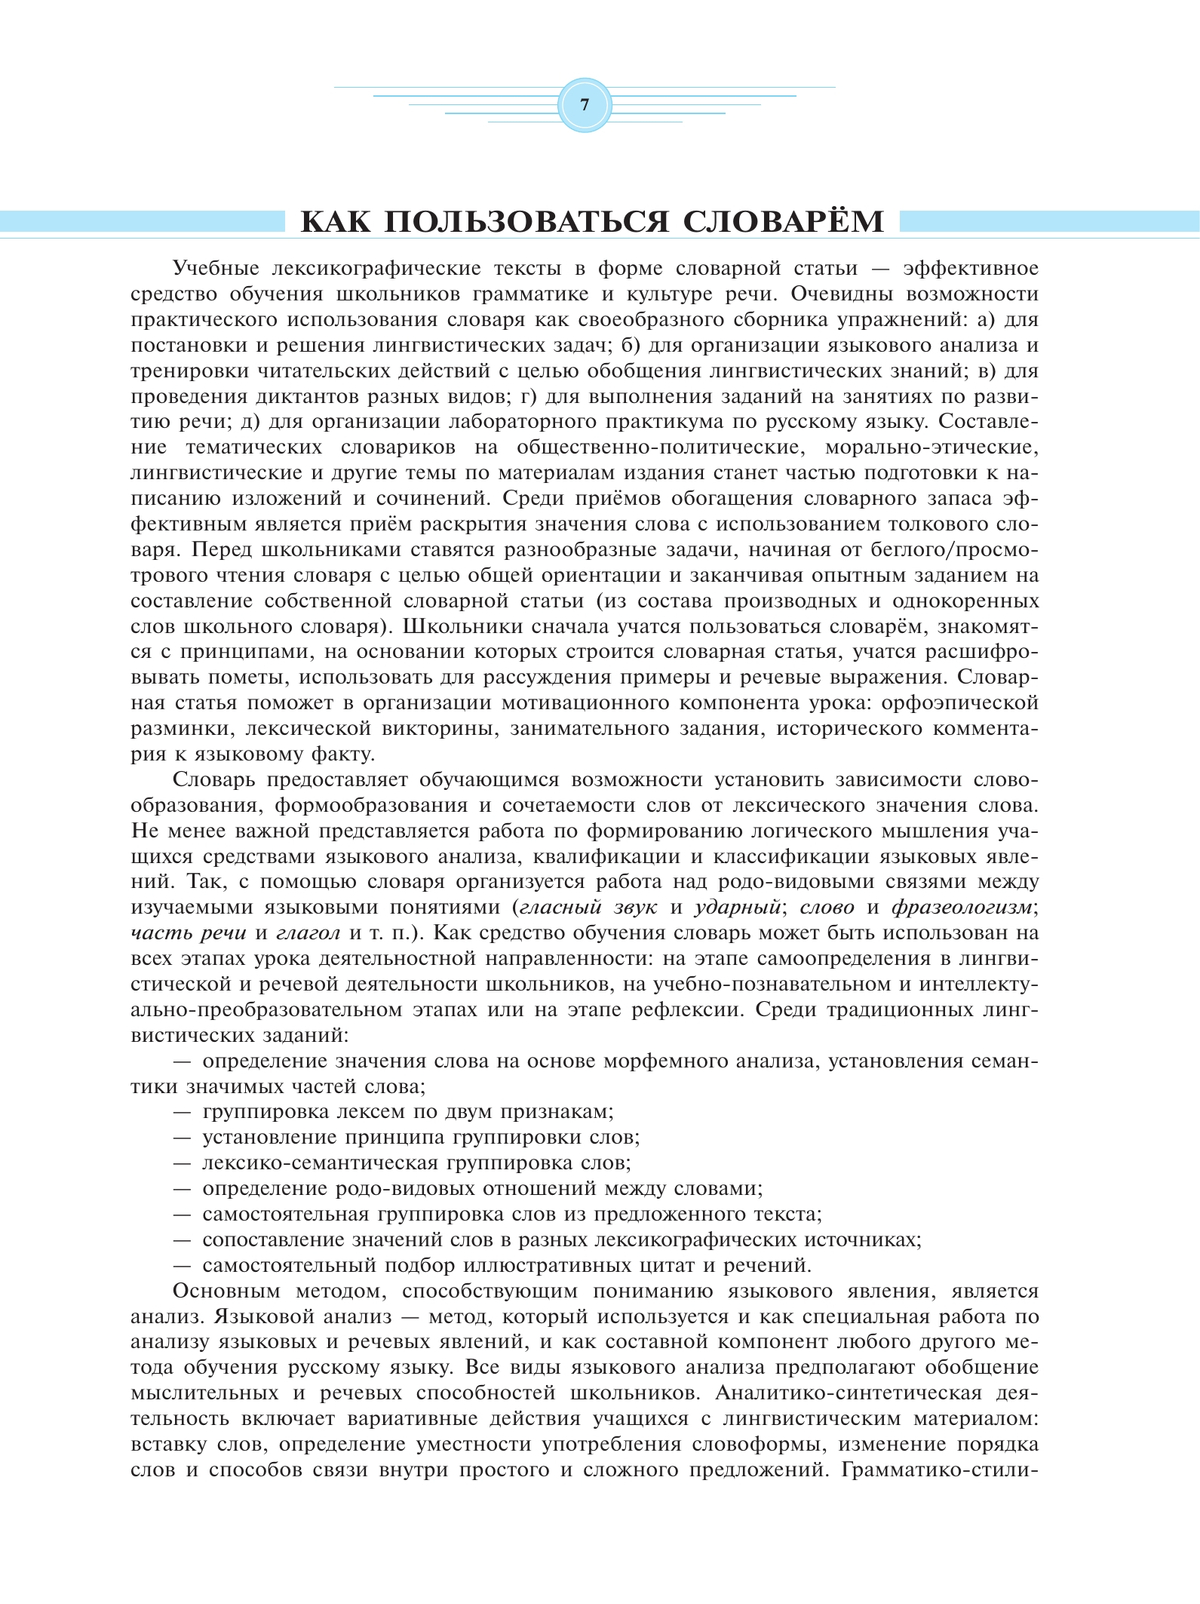 Универсальный словарь русского языка для школьников: более 5000 словарных статей 6